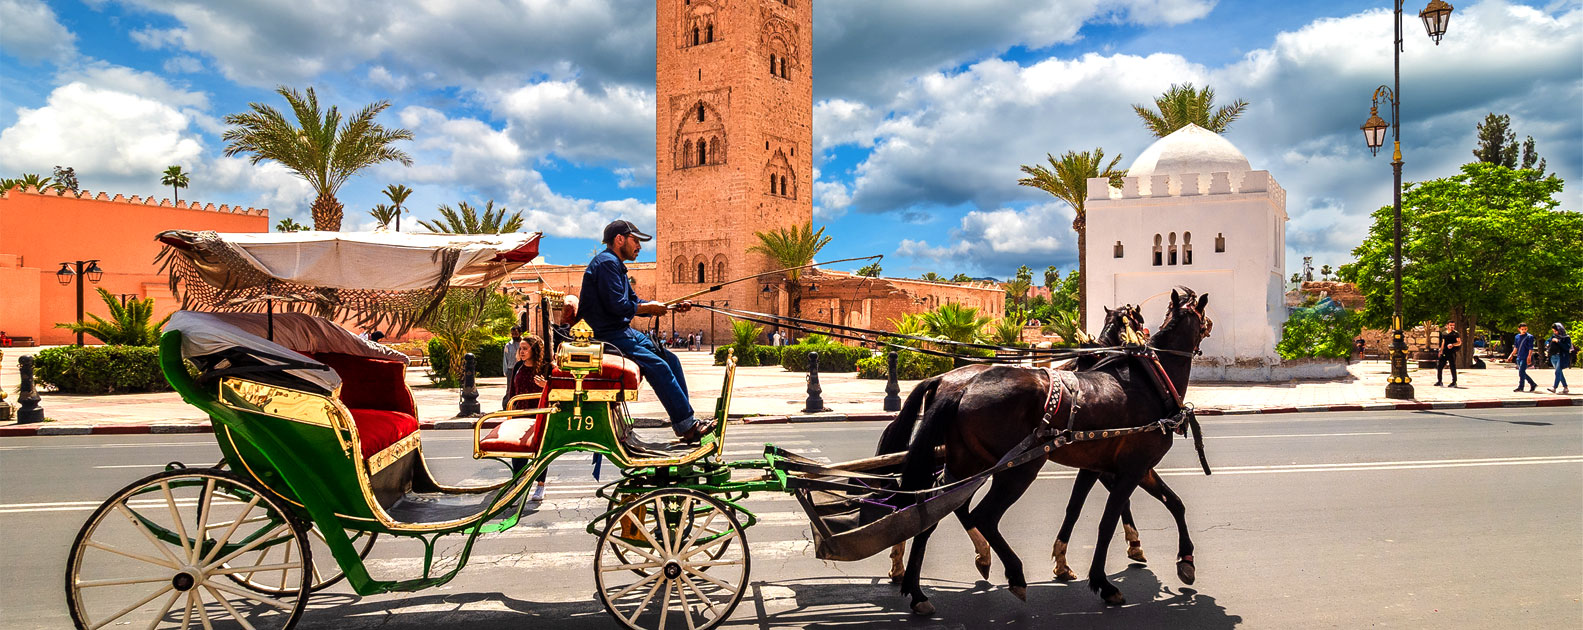 Het mysterieuze Marrakech